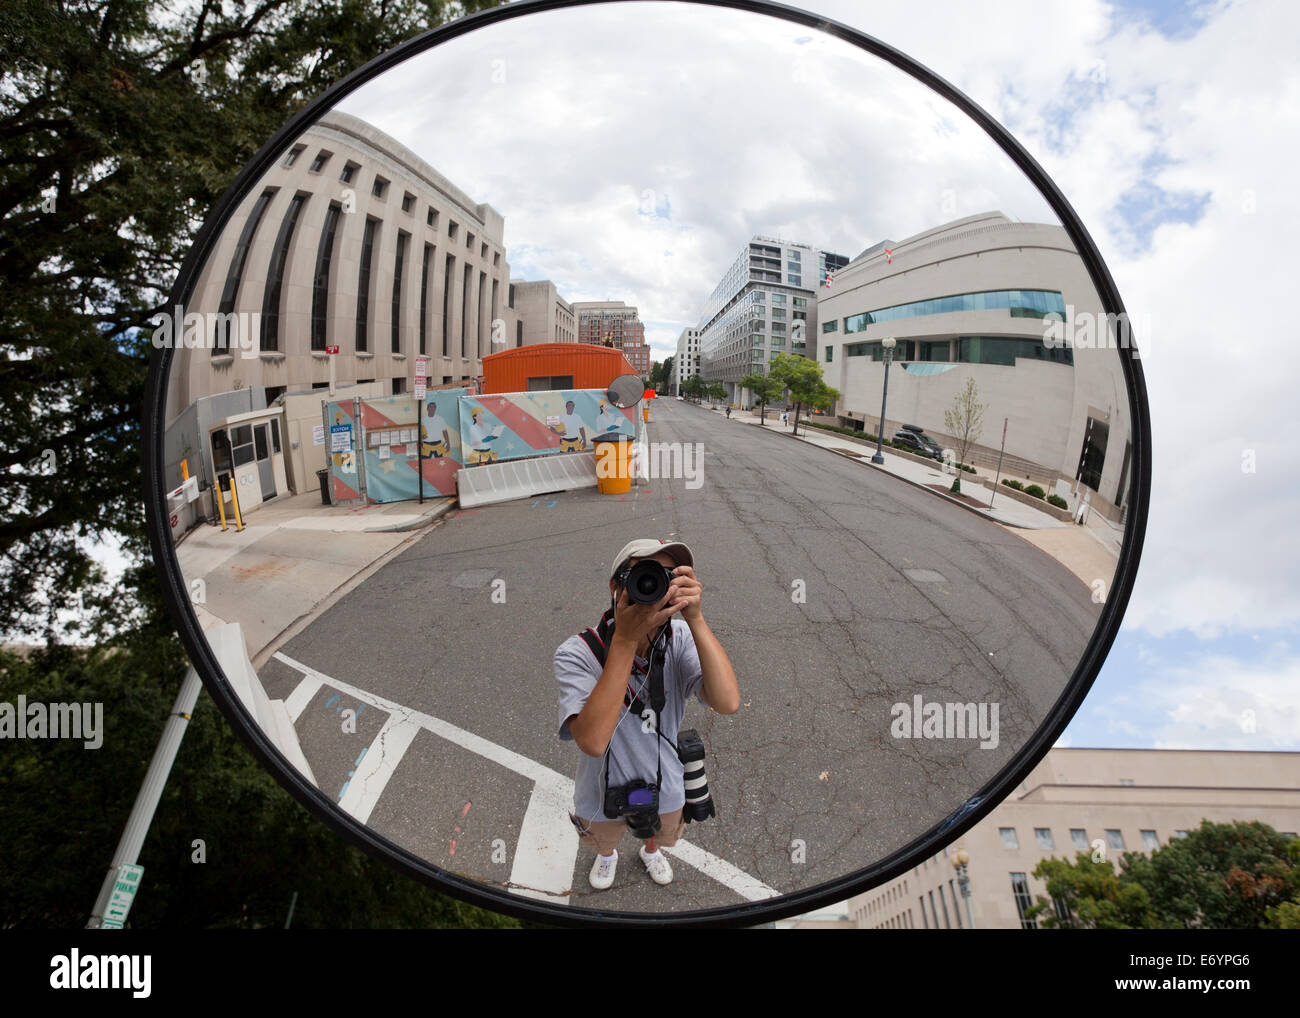 Reflexion des Fotografen in konvexe Spiegel - USA Stockfoto